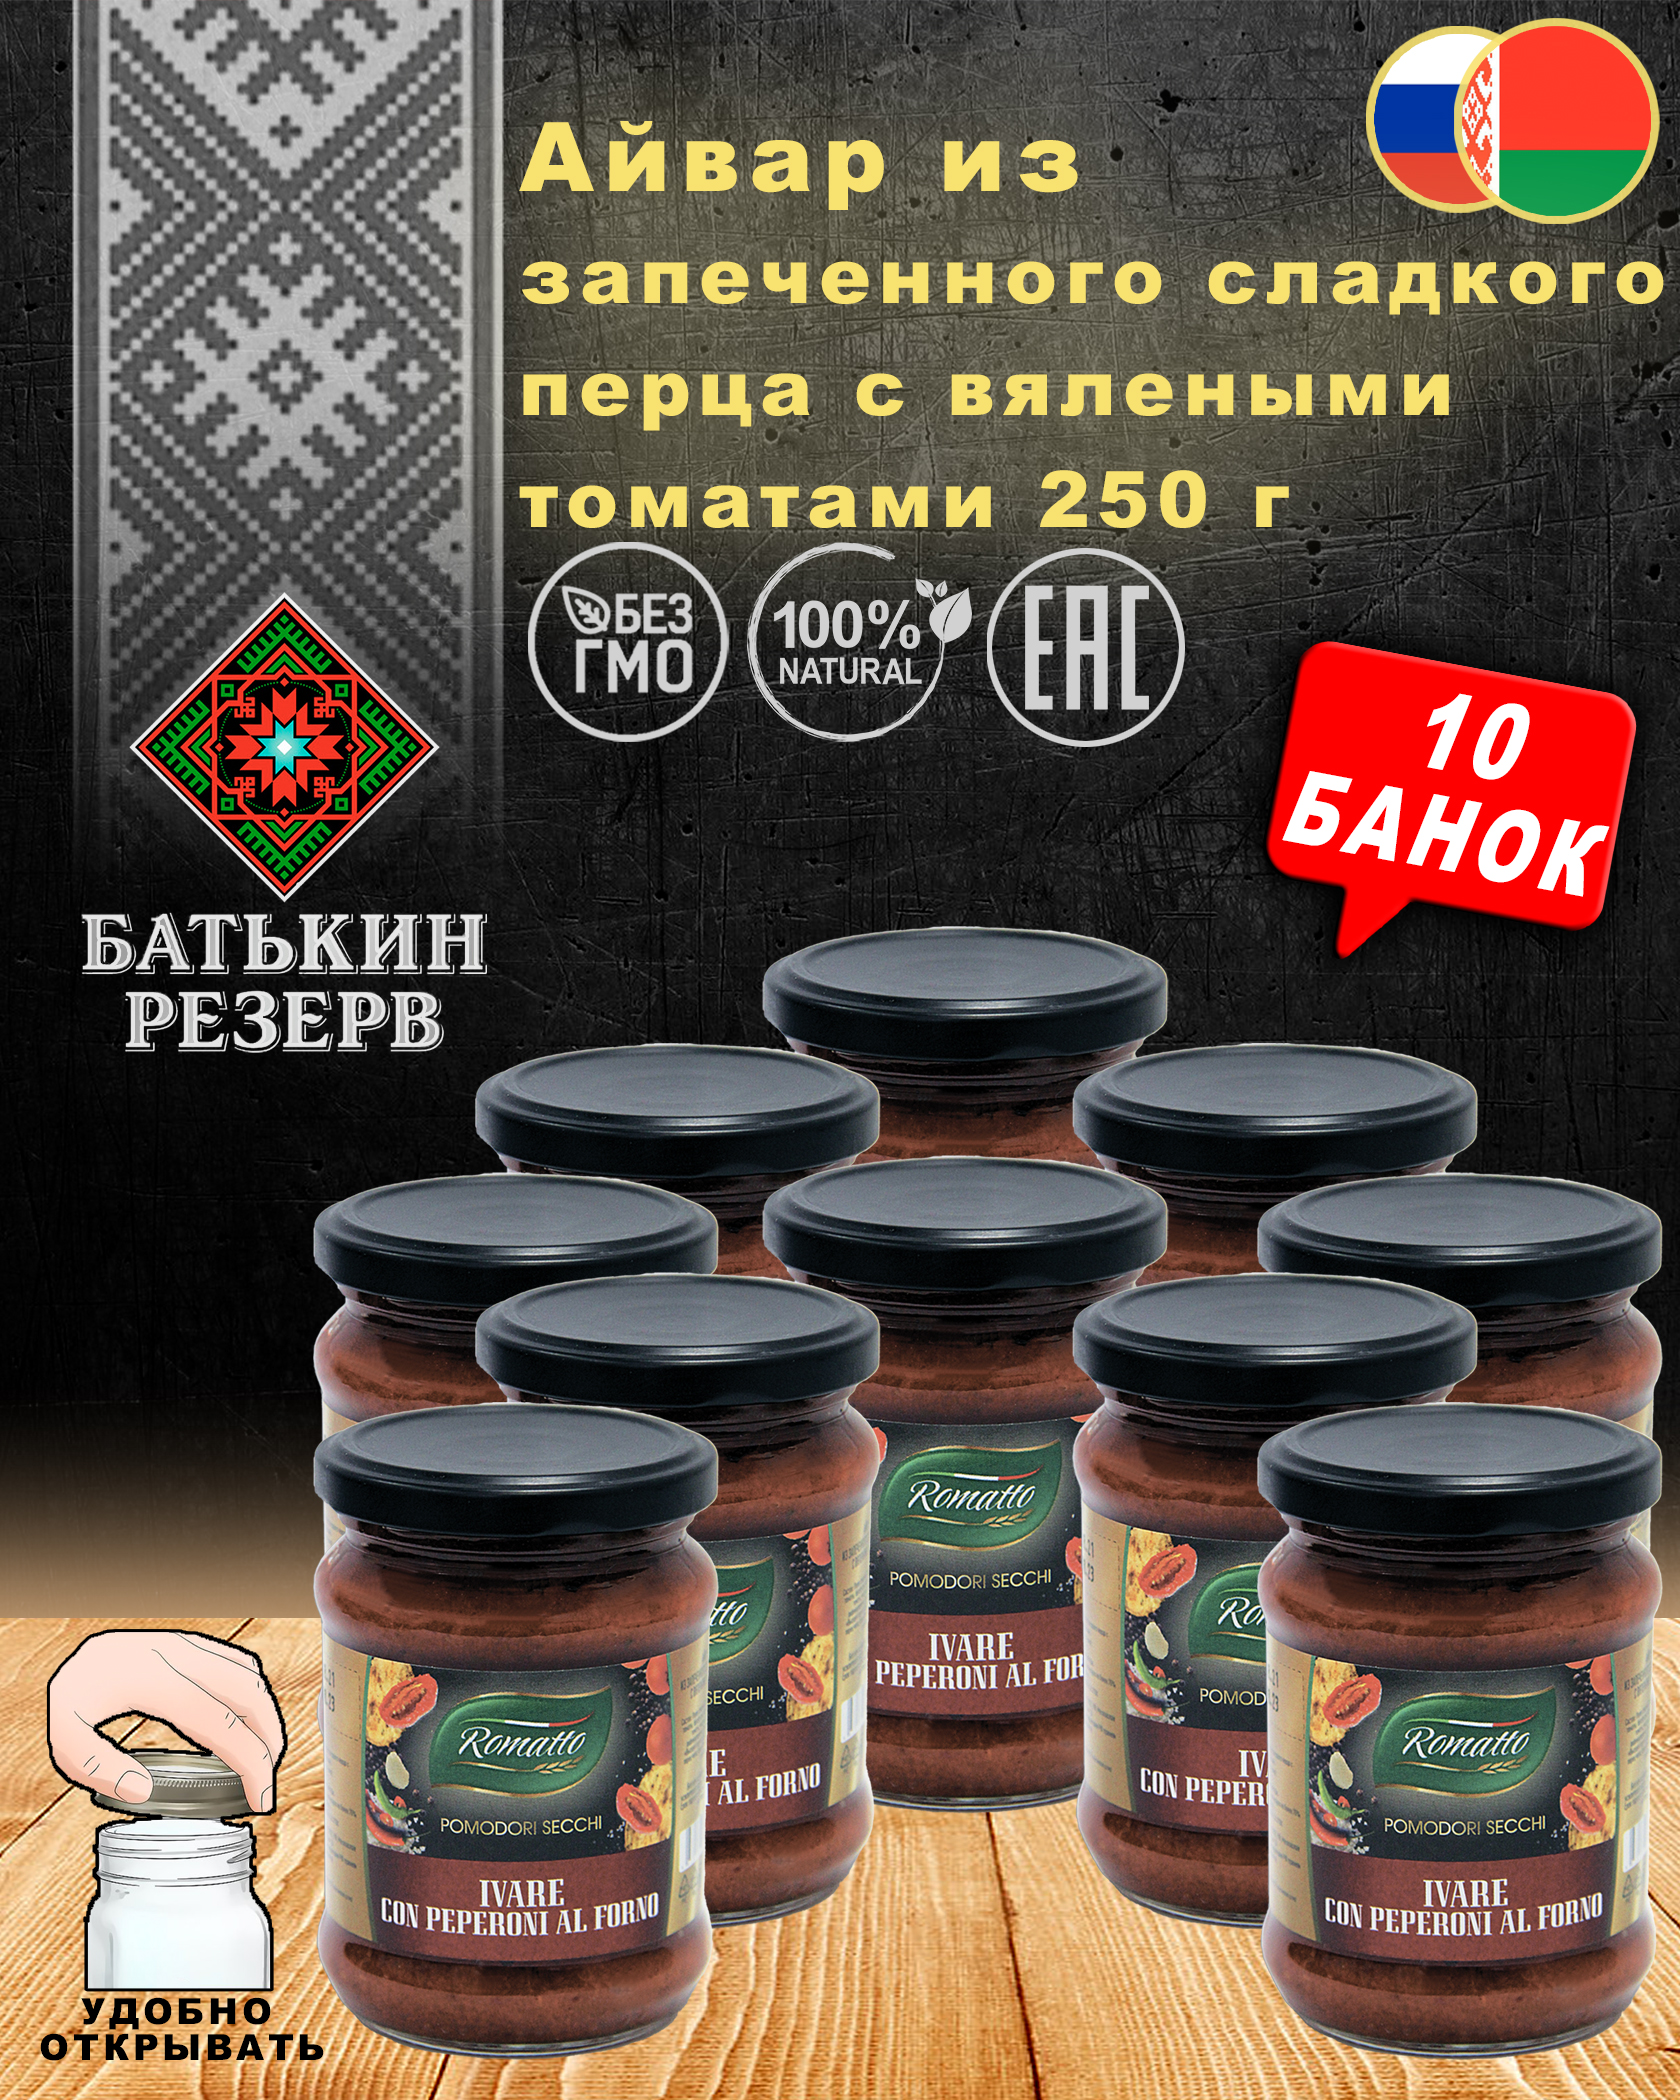 Айвар из запеченного сладкого перца с вялеными томатами Romatto, ТУ, 10 шт. по 250 г